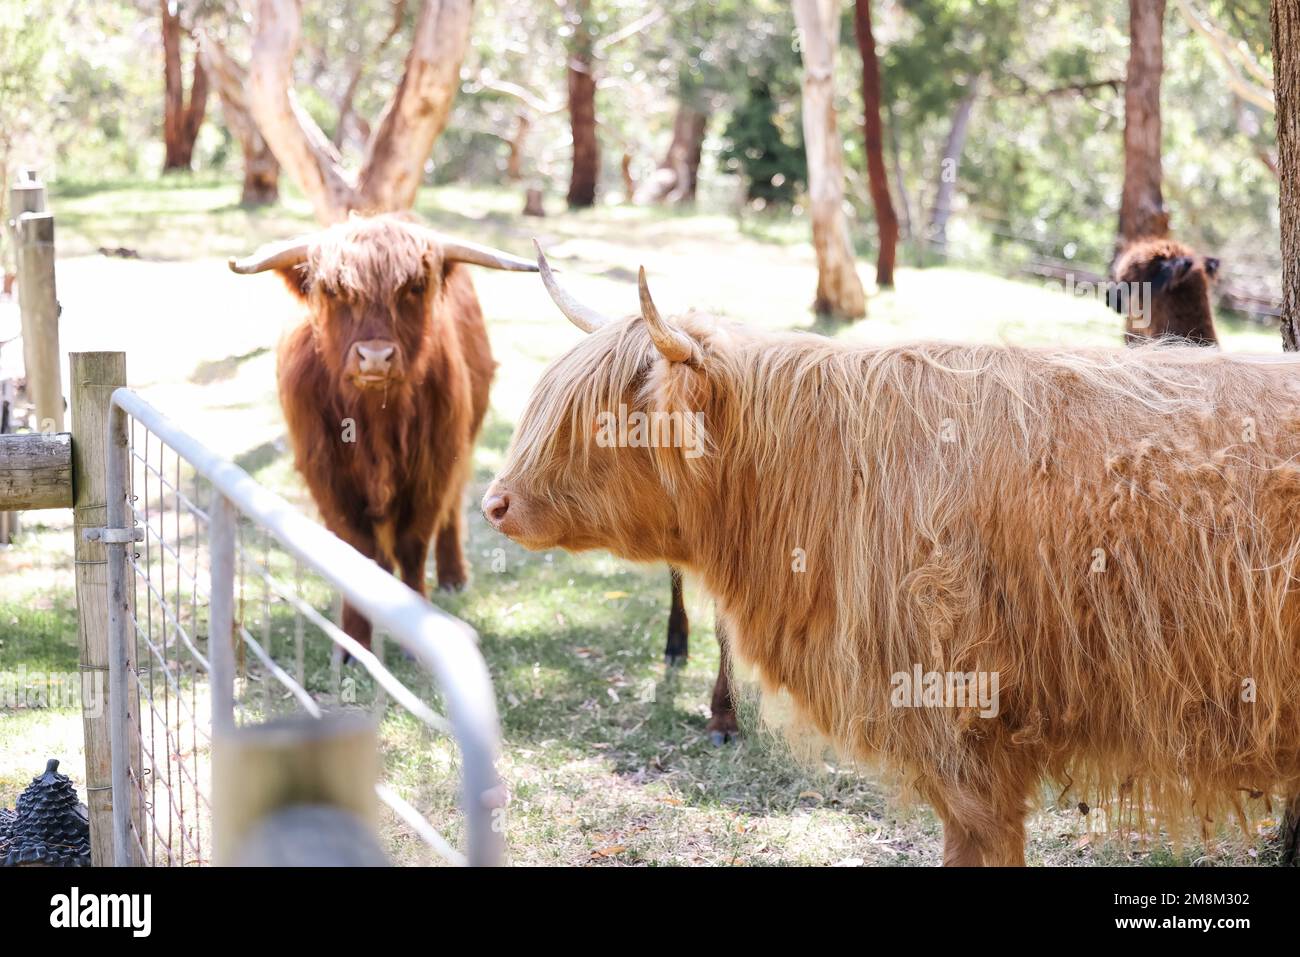 Deux vaches des hautes terres paissent calmement dans le champ Banque D'Images